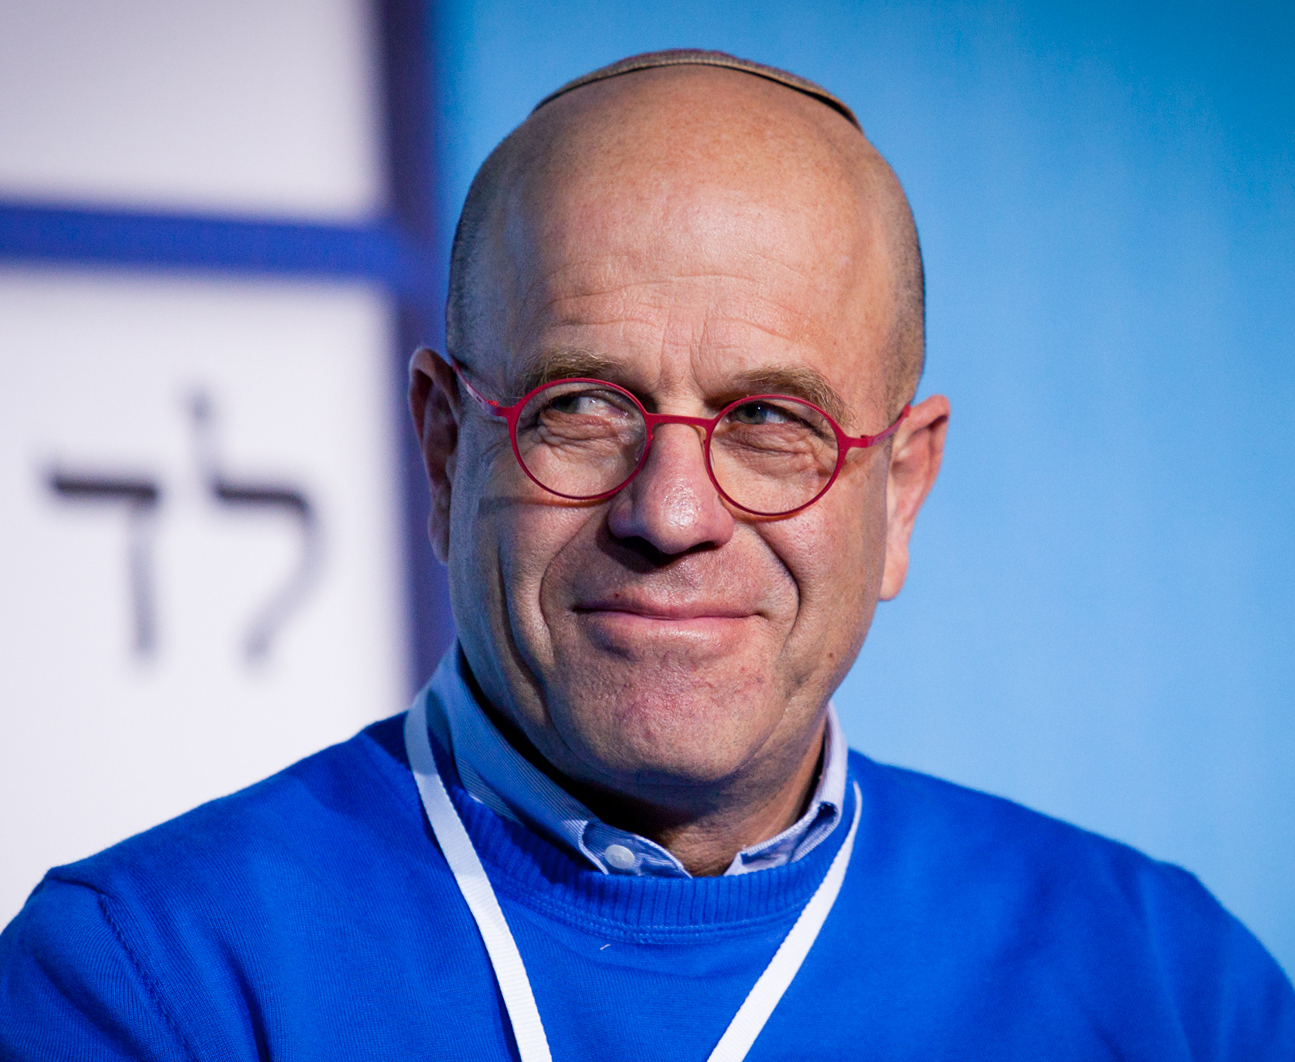 יו"ר הכנסת לשעבר אברהם בורג. צילום: אמיר לוי / פלאש 90.